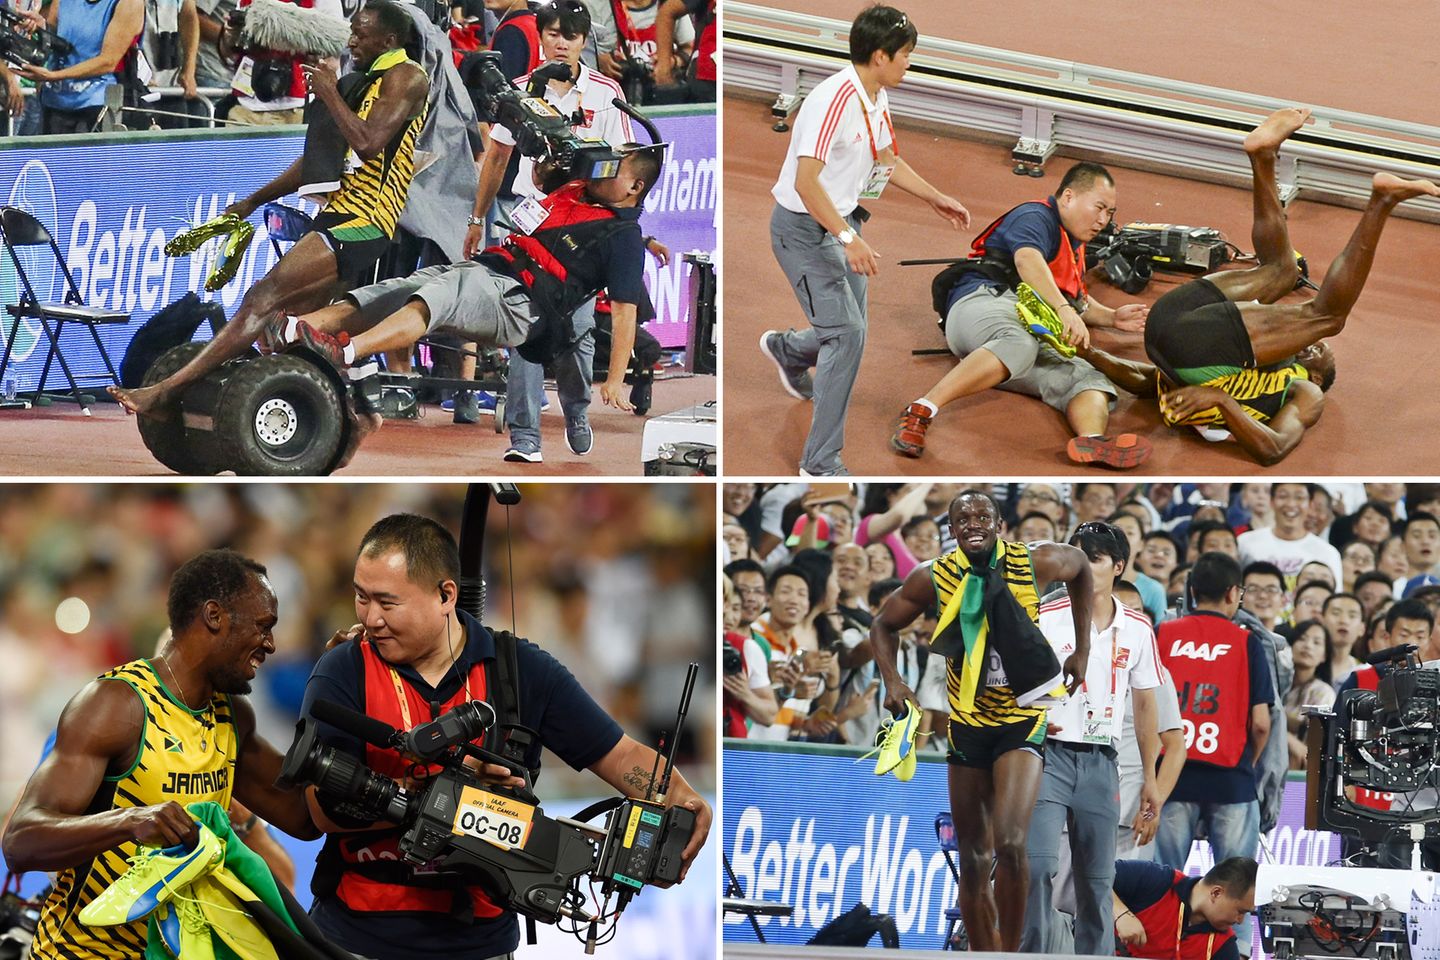 Nach seinem Sieg beim 200m Sprint in Peking wird Usain Bolt von einem Kameramann mit einem Segway umgefahren. Der Sportler nimmt es mit Humor und lässt sich die Freude über seinen Sieg nicht verderben.